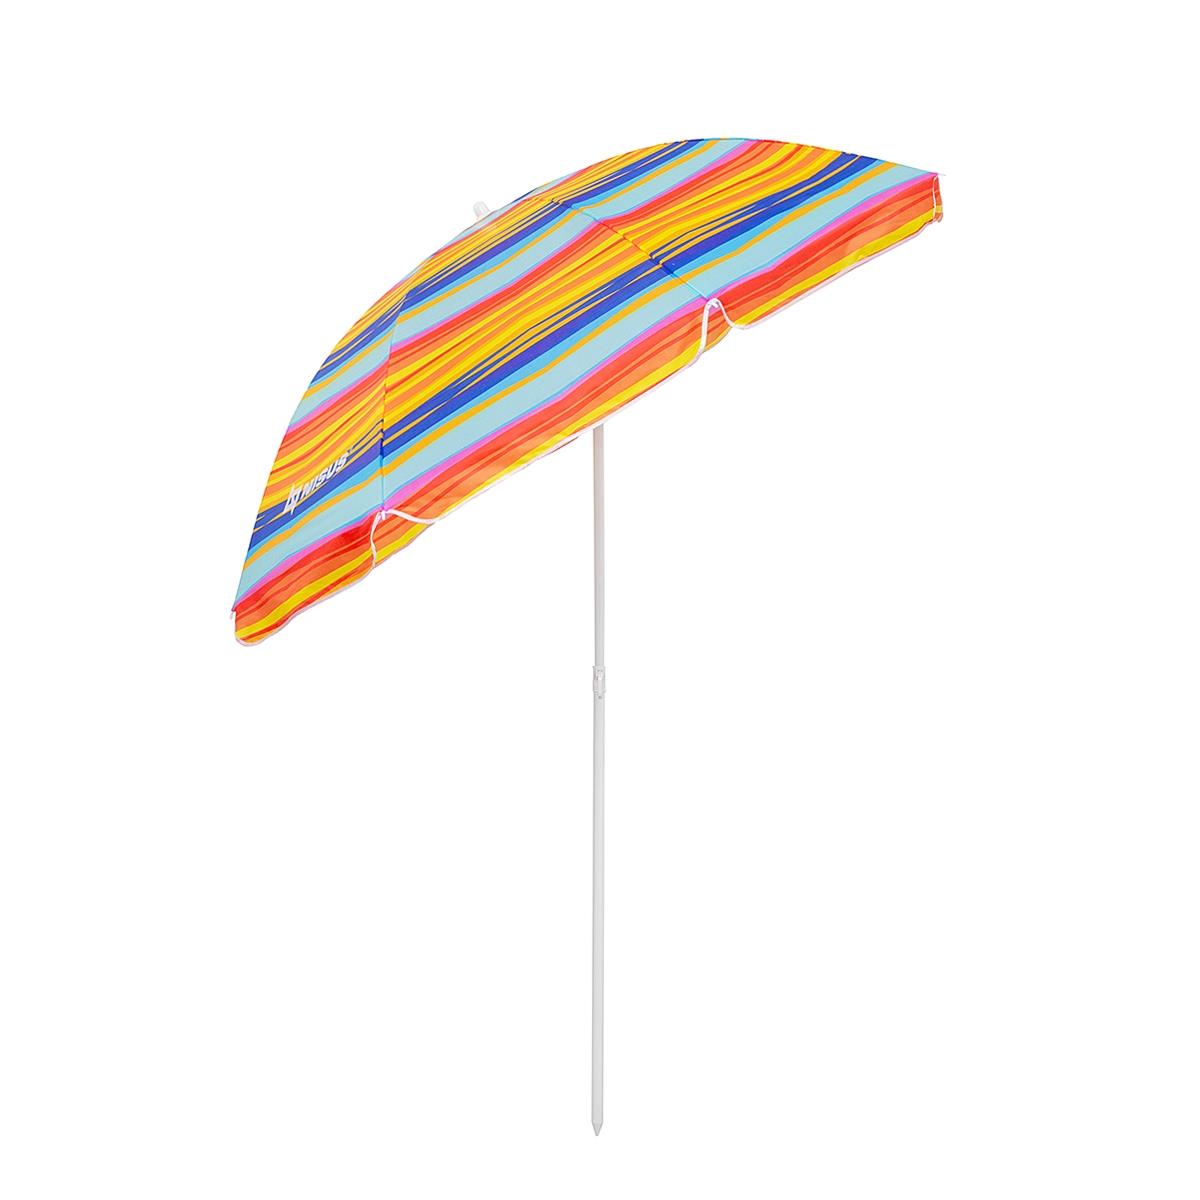 Зонт пляжный d 2,00м с наклоном (22/25/170Т) NA-200N-SO Nisus зонт пляжный d 2 00м с наклоном голубой 22 25 170т na 200n b nisus